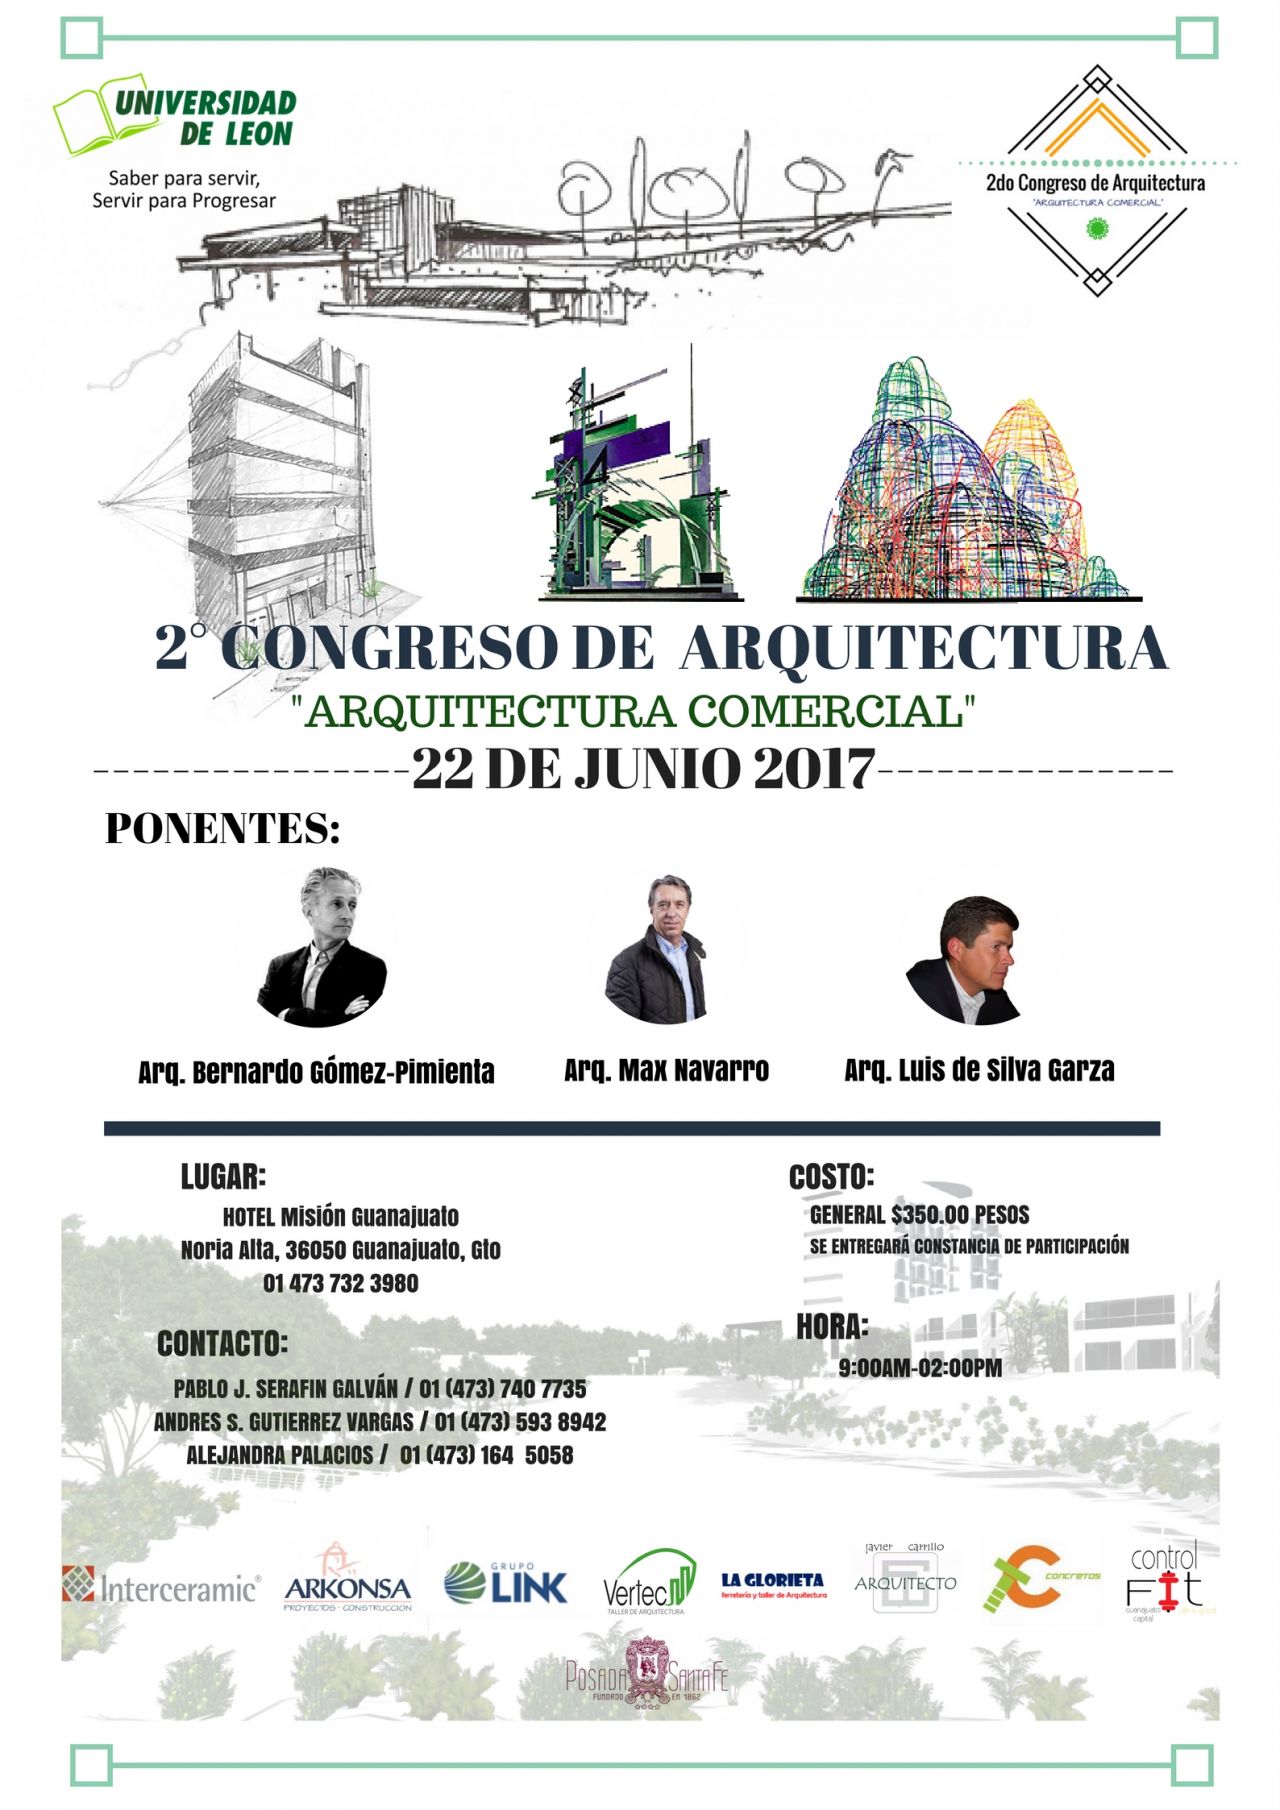 Estudiante Guanajuatense organiza congreso de Arquitectura